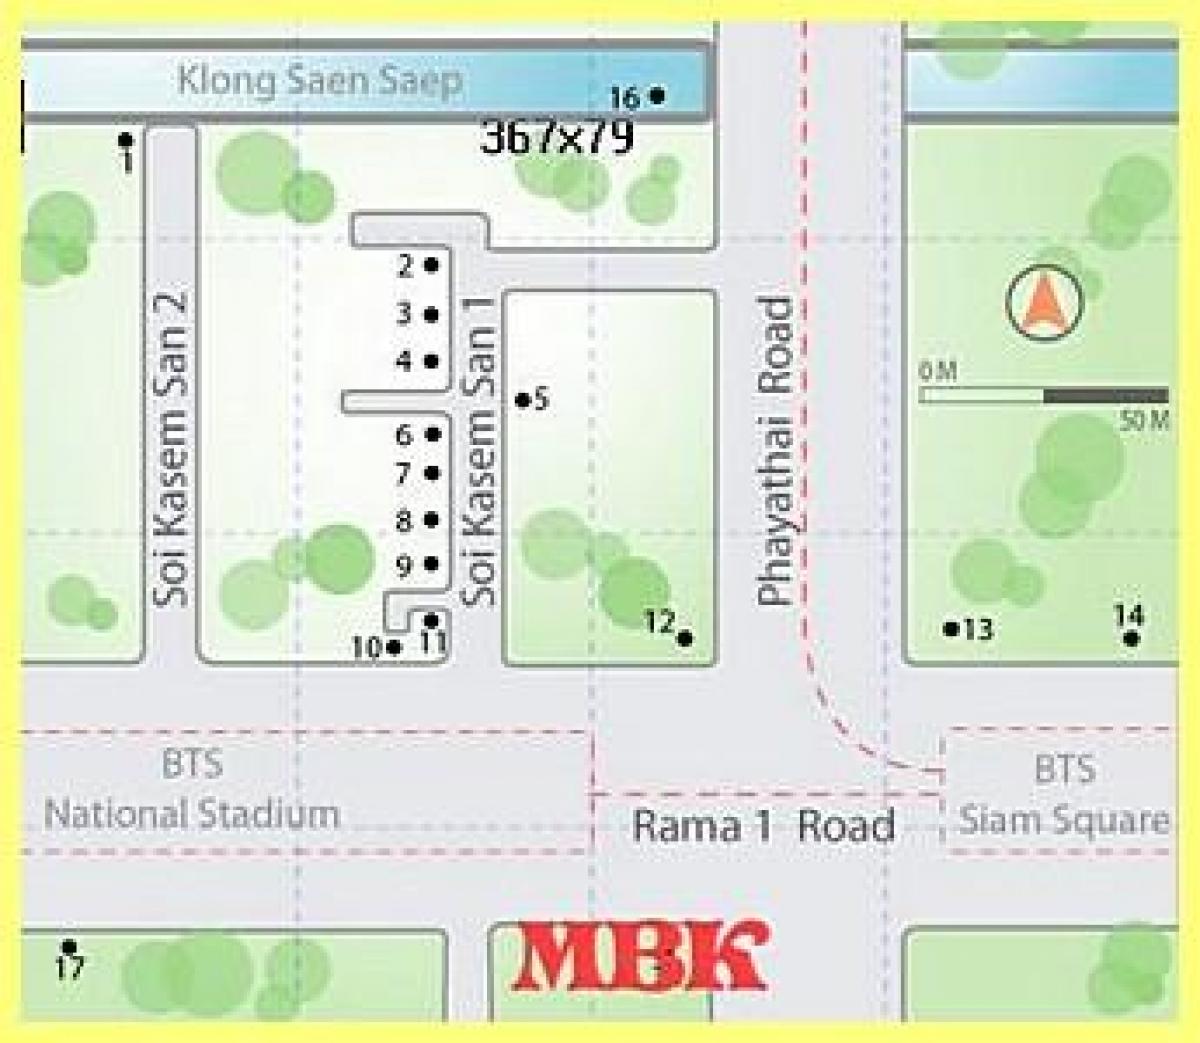 mbk სავაჭრო ცენტრი ბანგკოკში რუკა